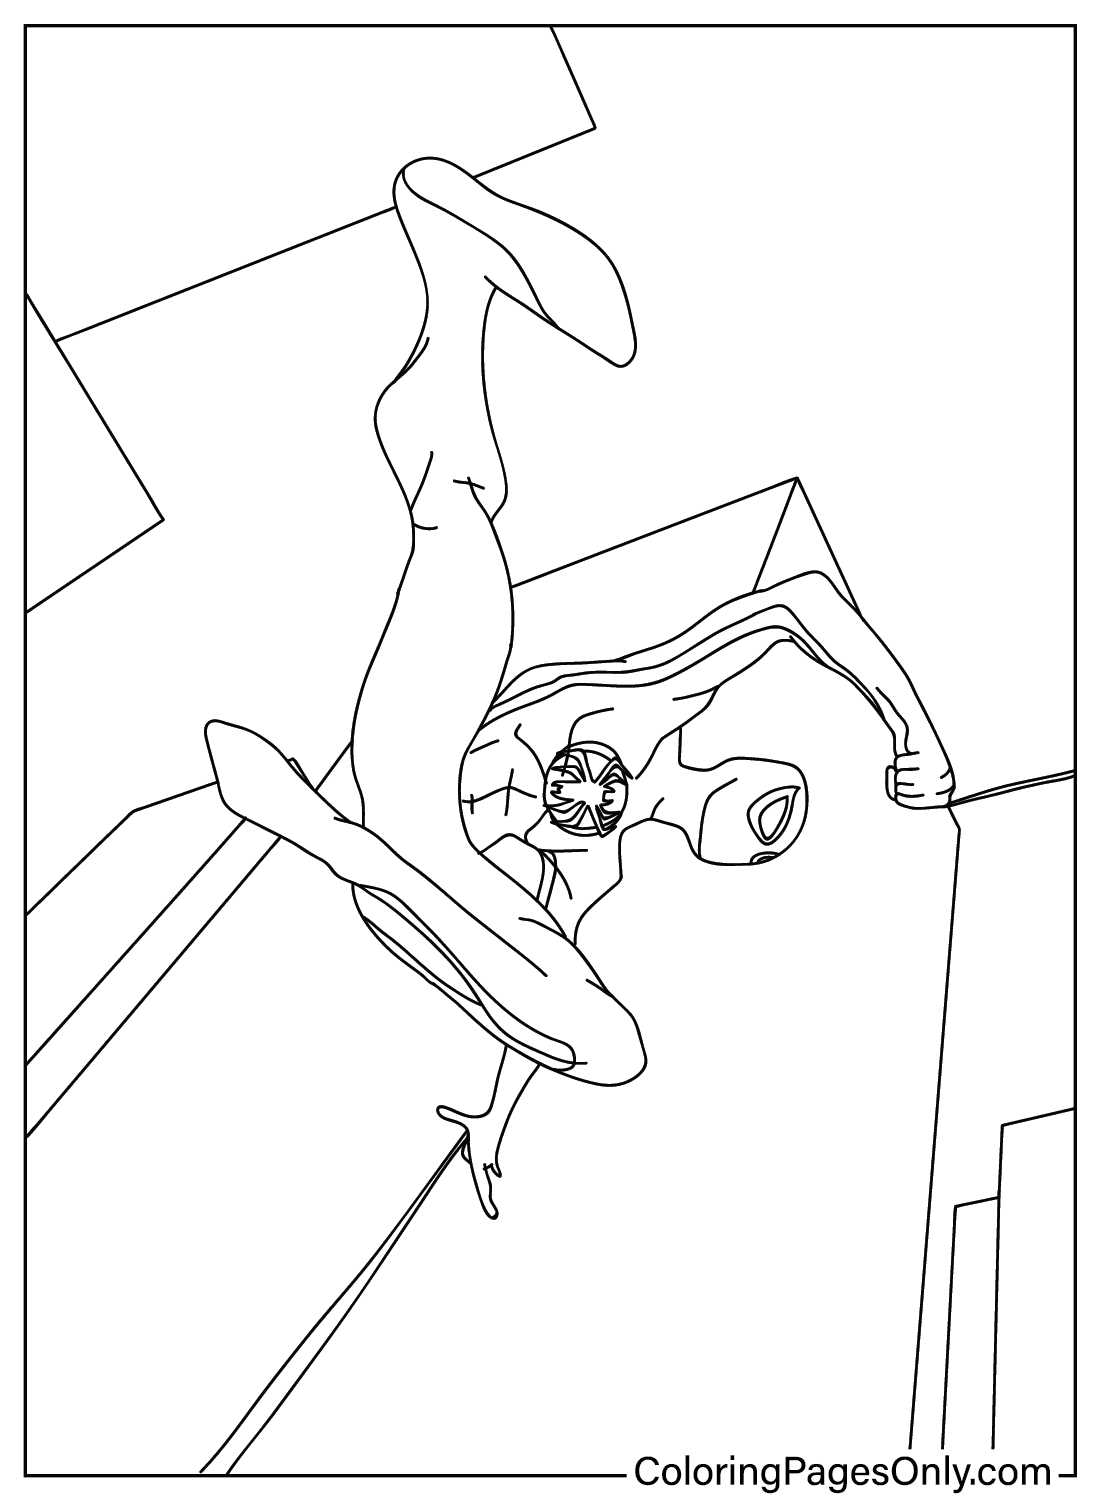 Раскраски «Человек-паук через паука» для печати из «Человека-паука: Через паука»